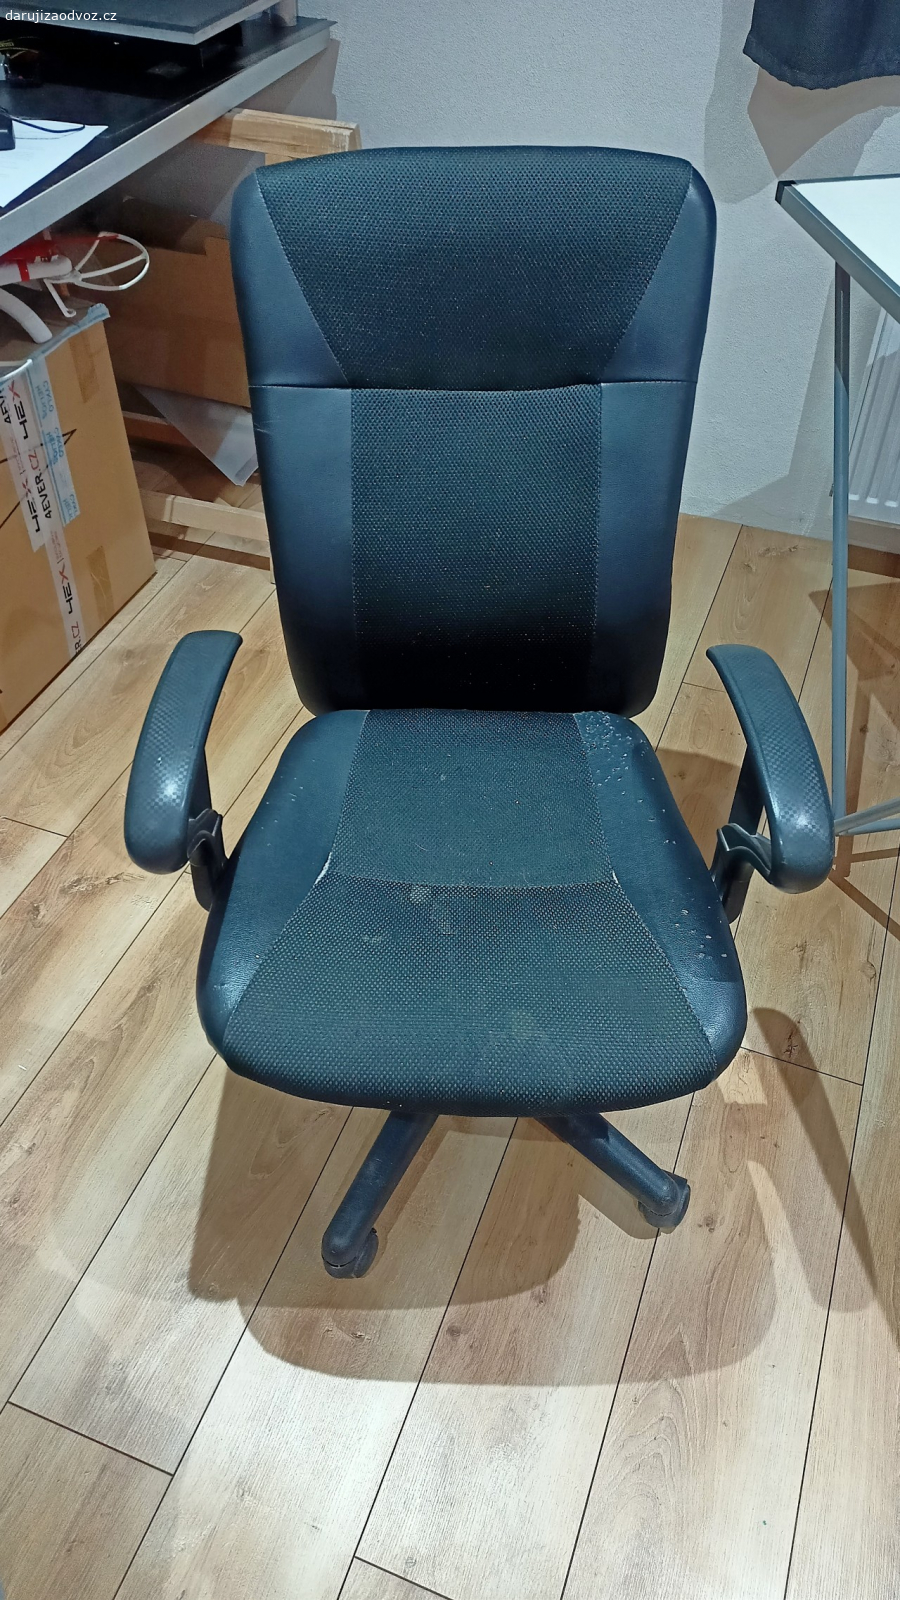 kancelářská židle zdarma funkční. židle